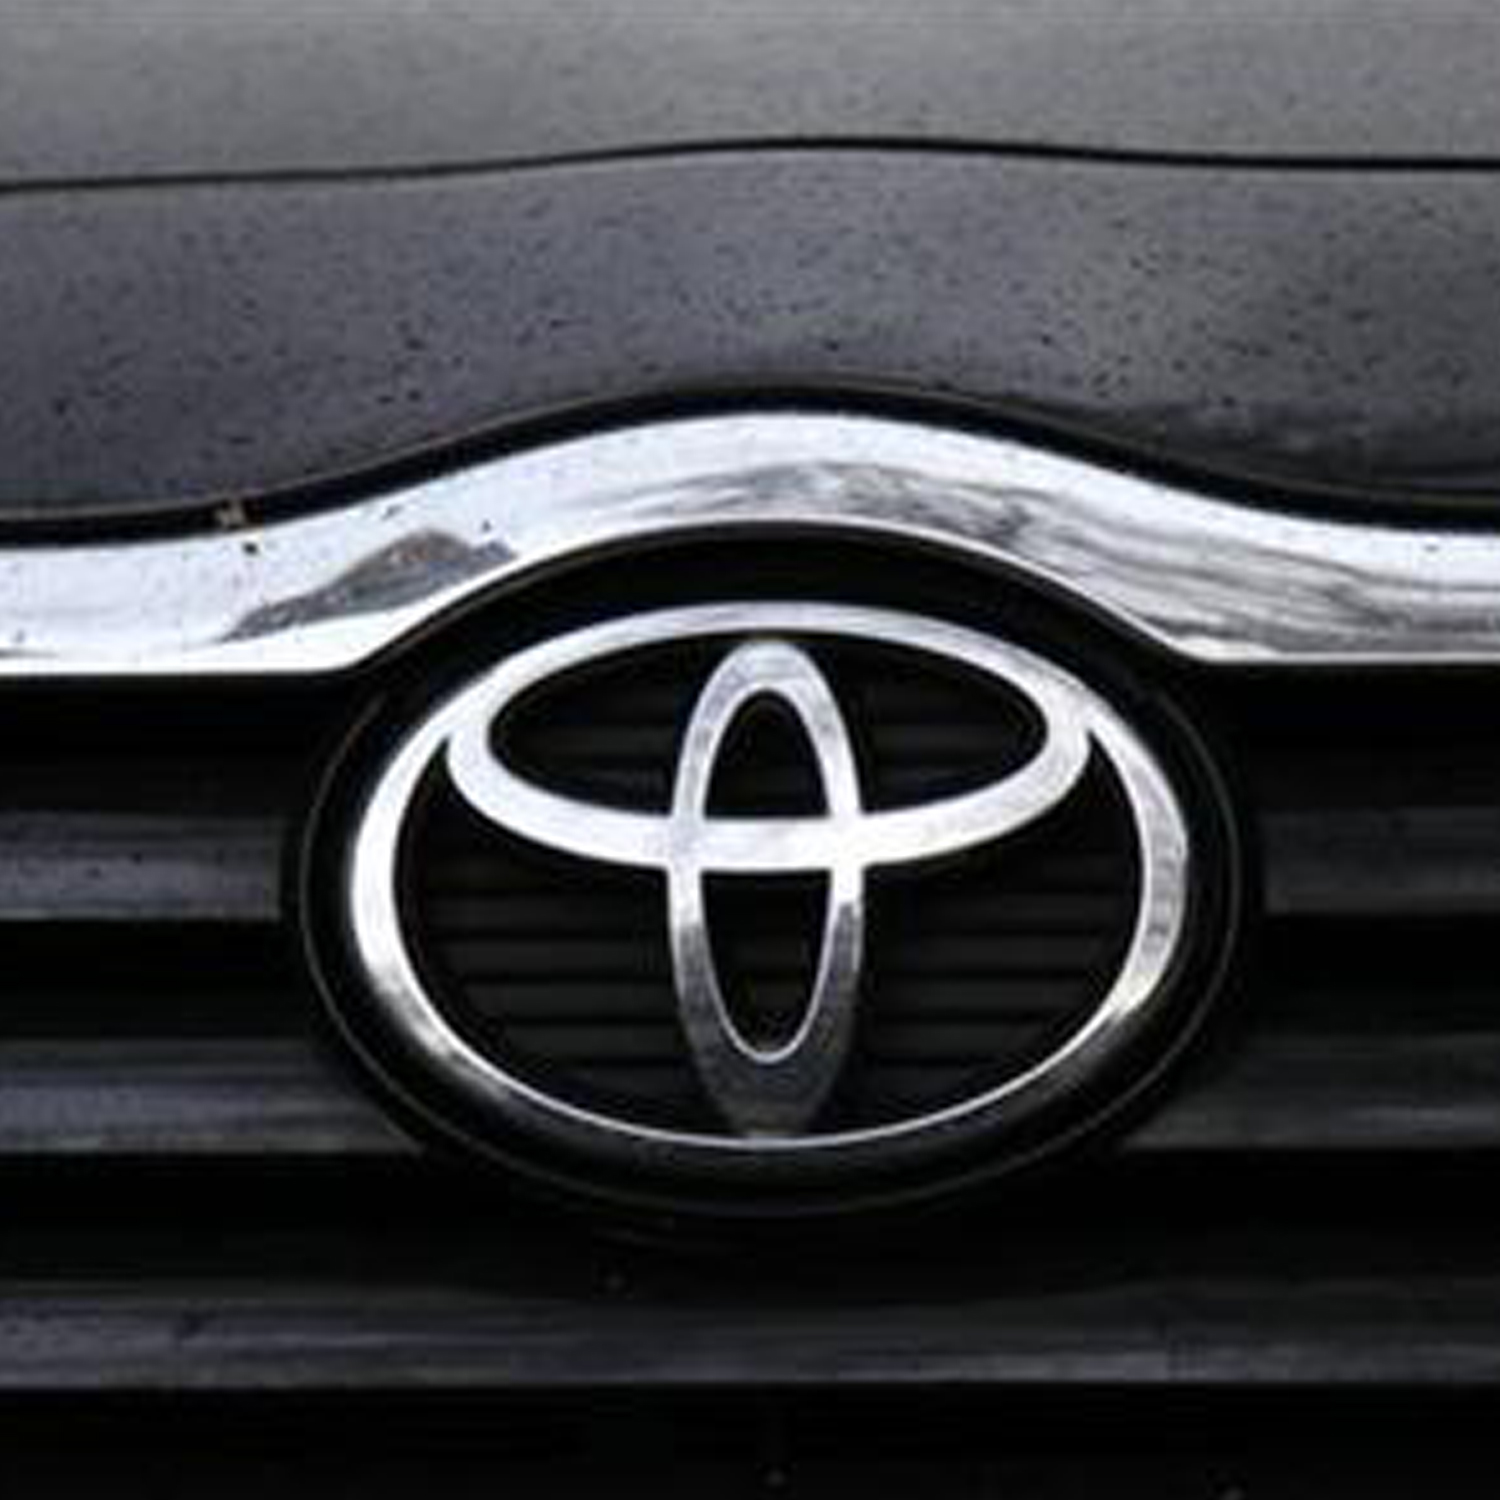 Toyota logo car emblem